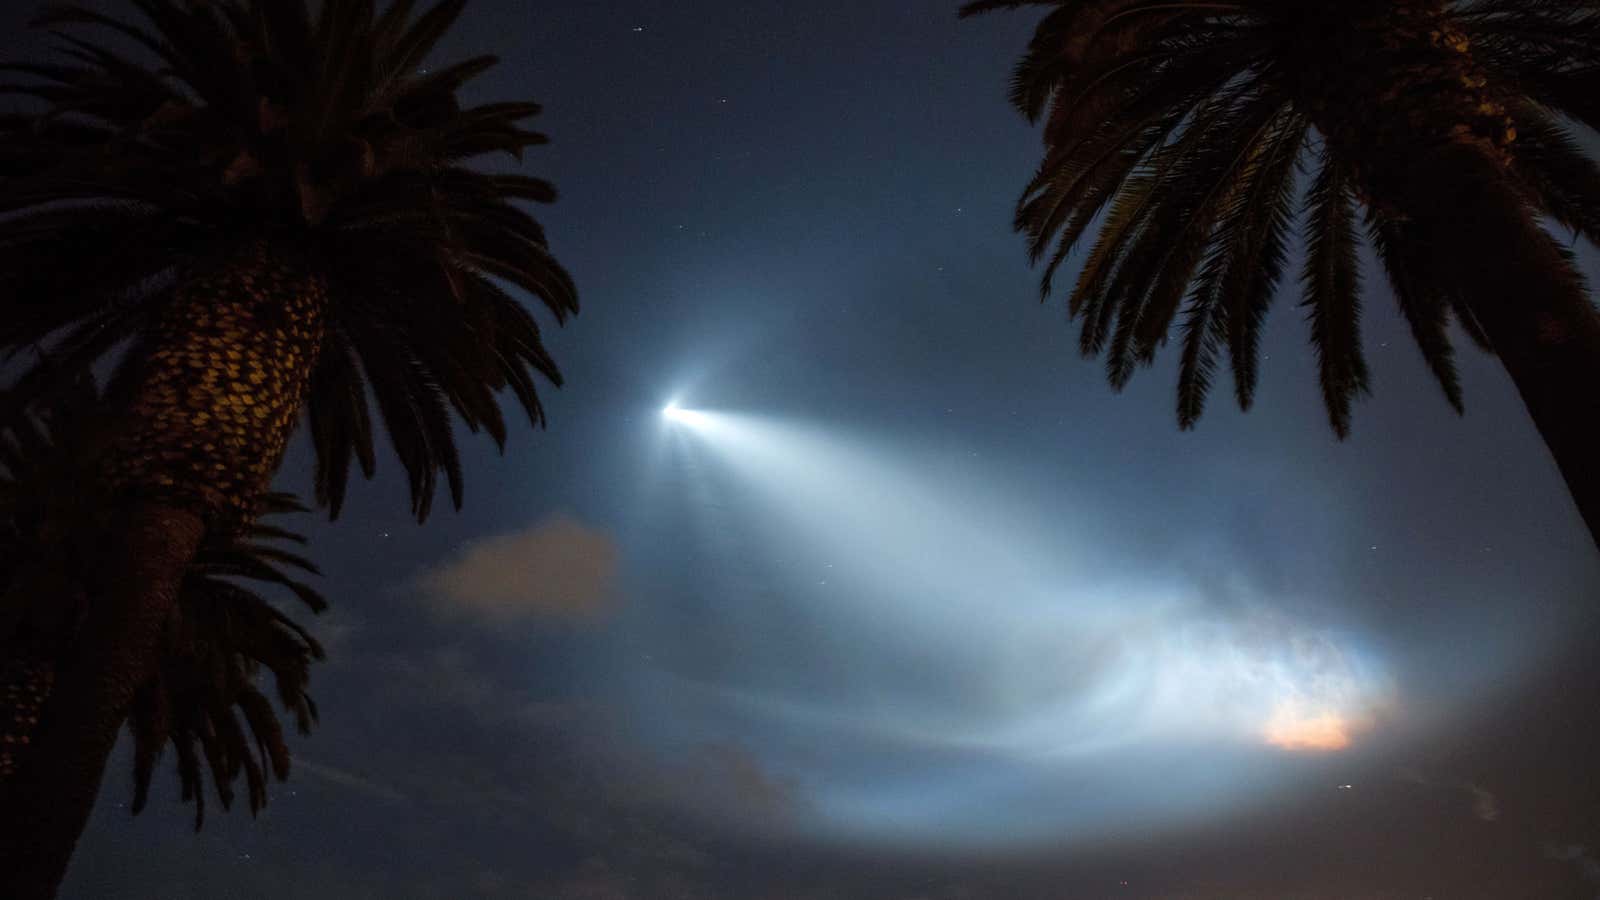 The Falcon 9’s glow seen over Corona del Mar, California.